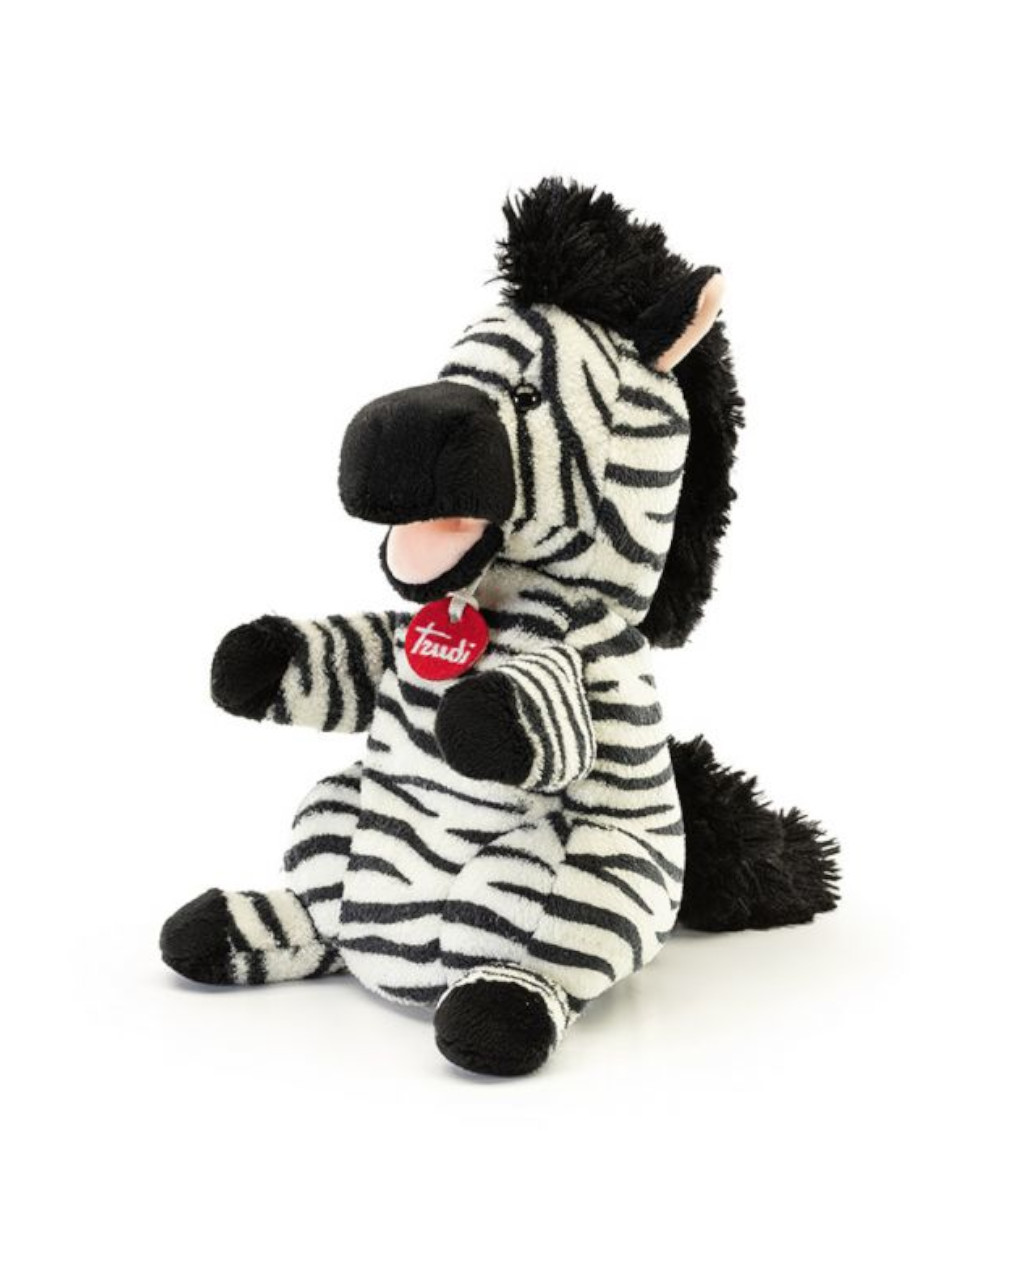 Zebra puppet - trudi - Trudi